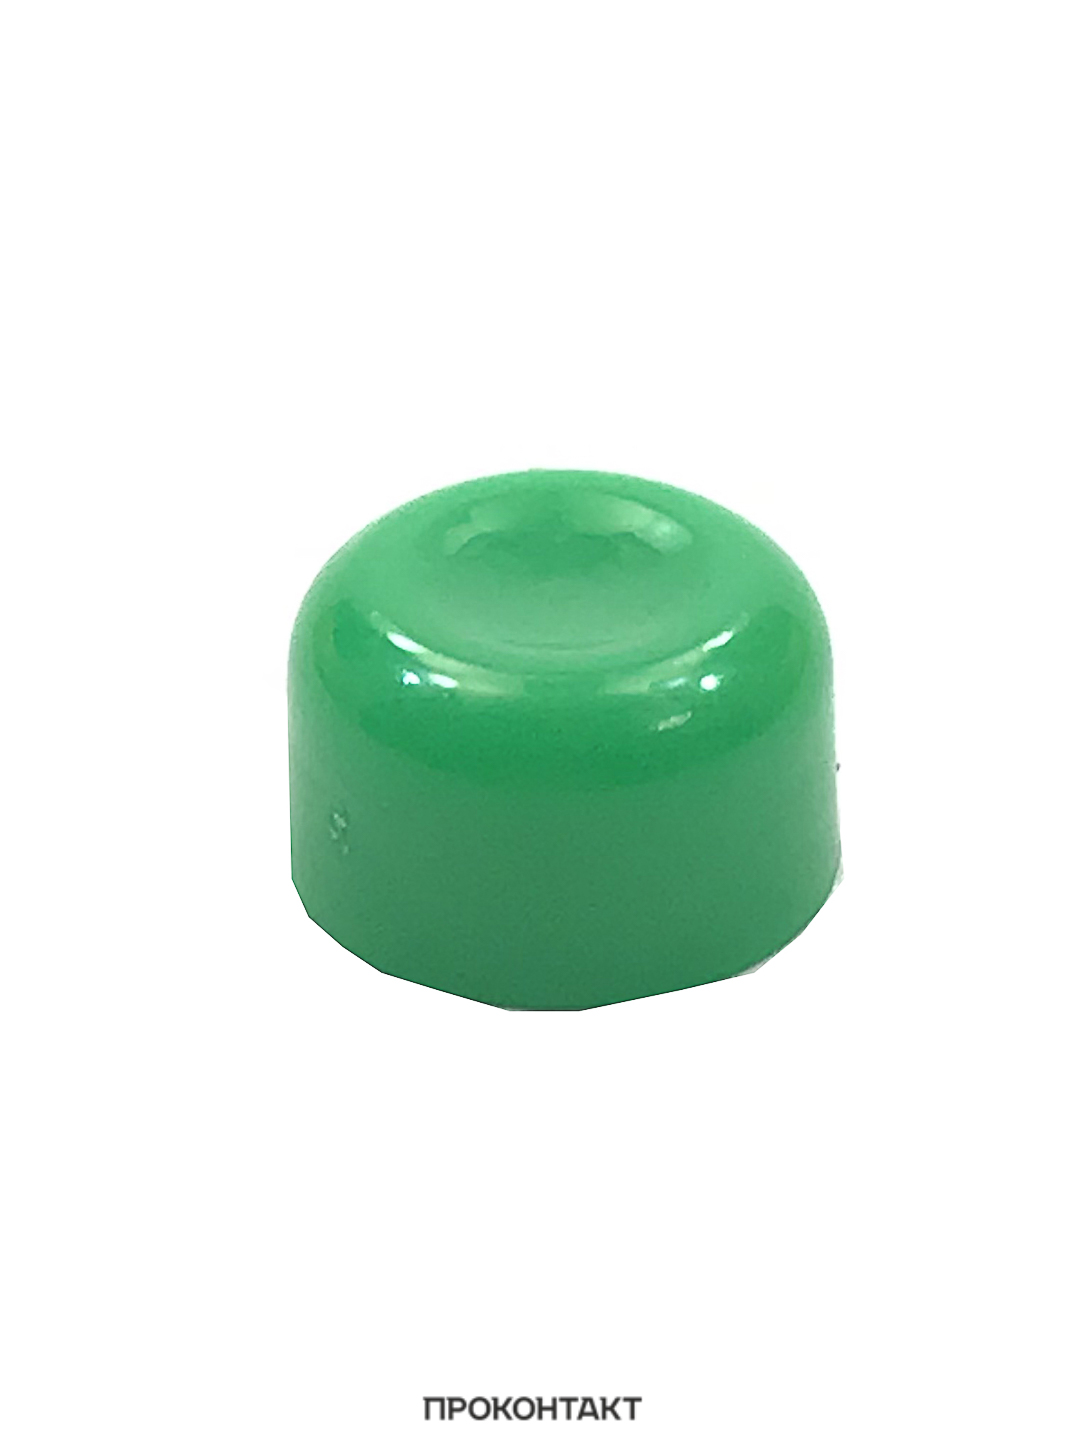 Купить Колпачок для кнопки: A01 зеленый в Челябинске